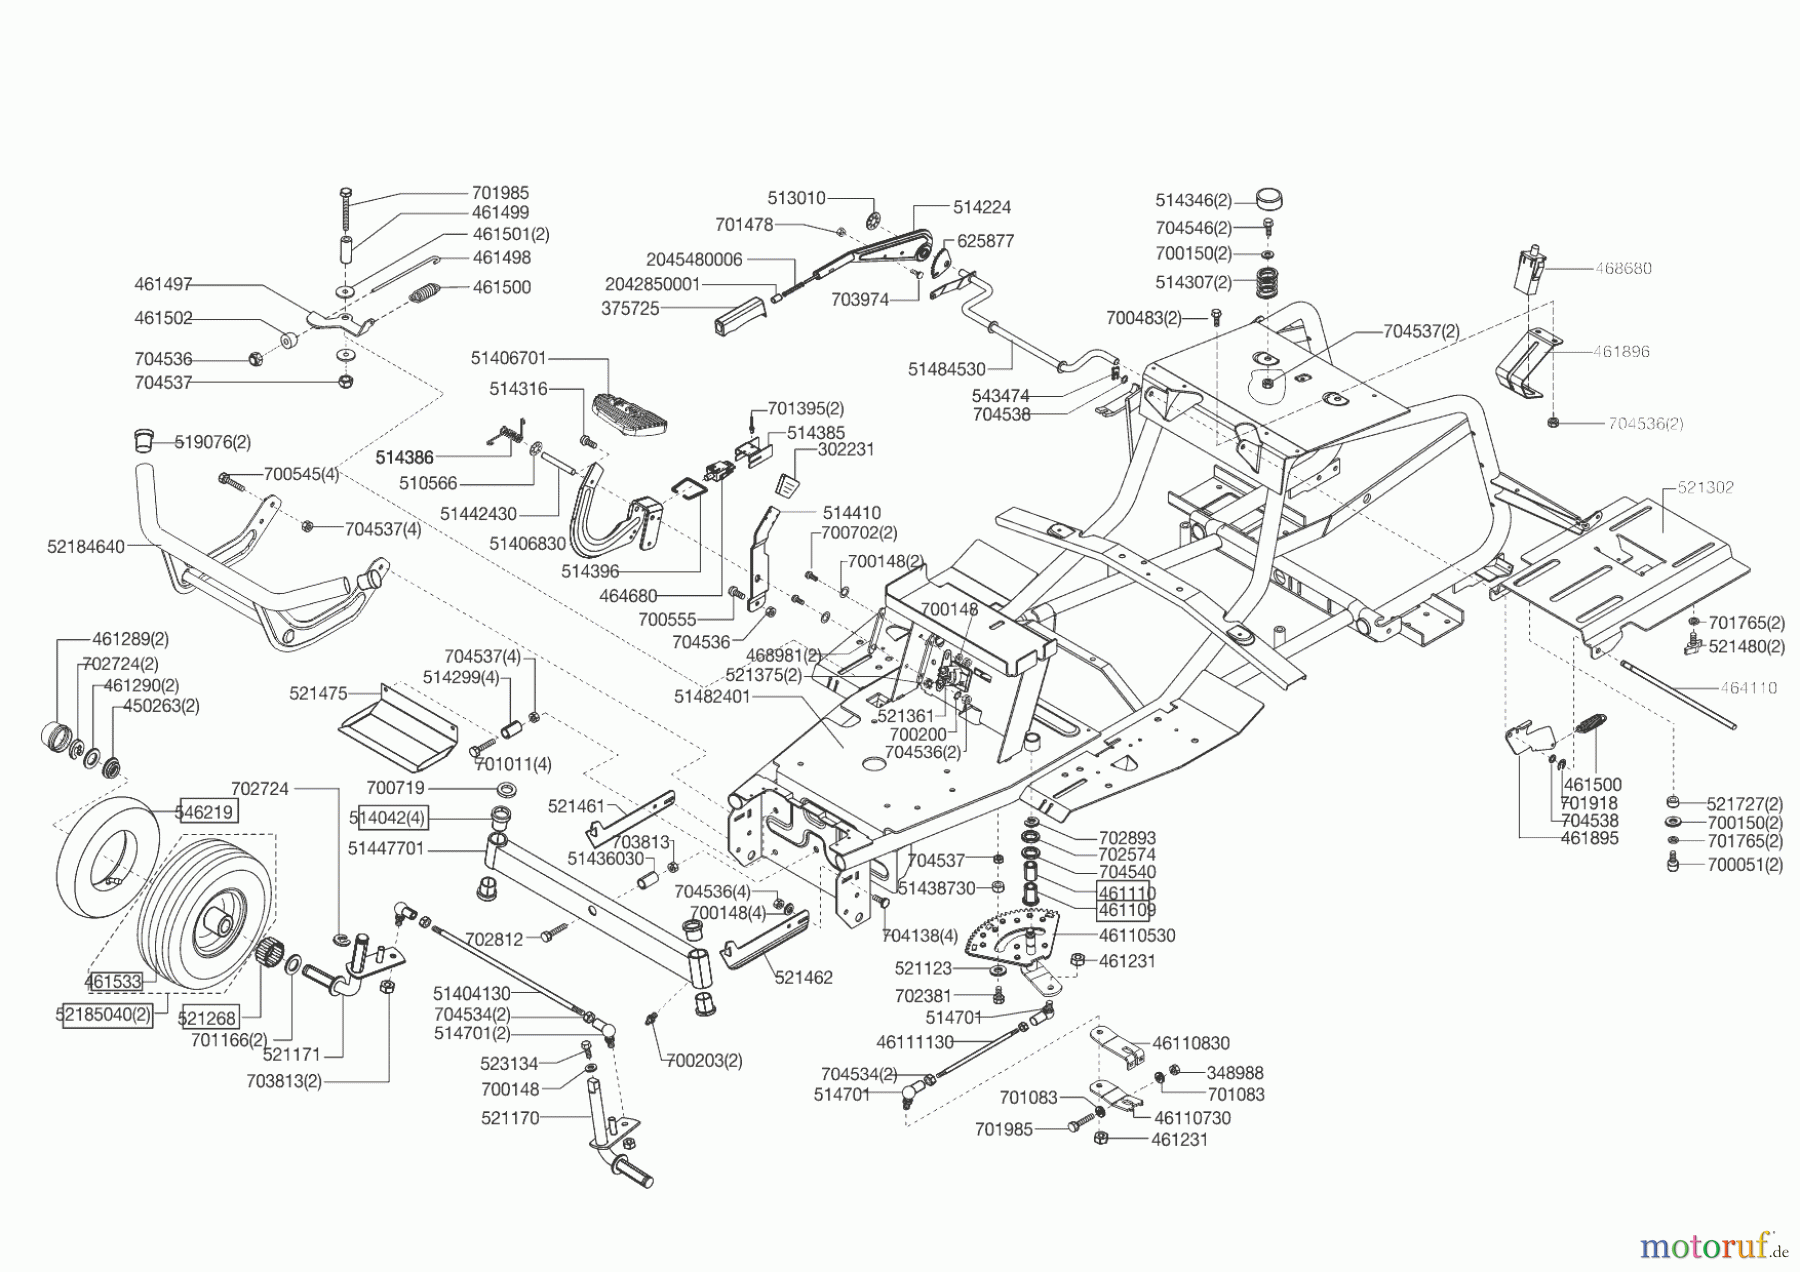  Powerline Gartentechnik Rasentraktor T 13-92 Edition Seite 2